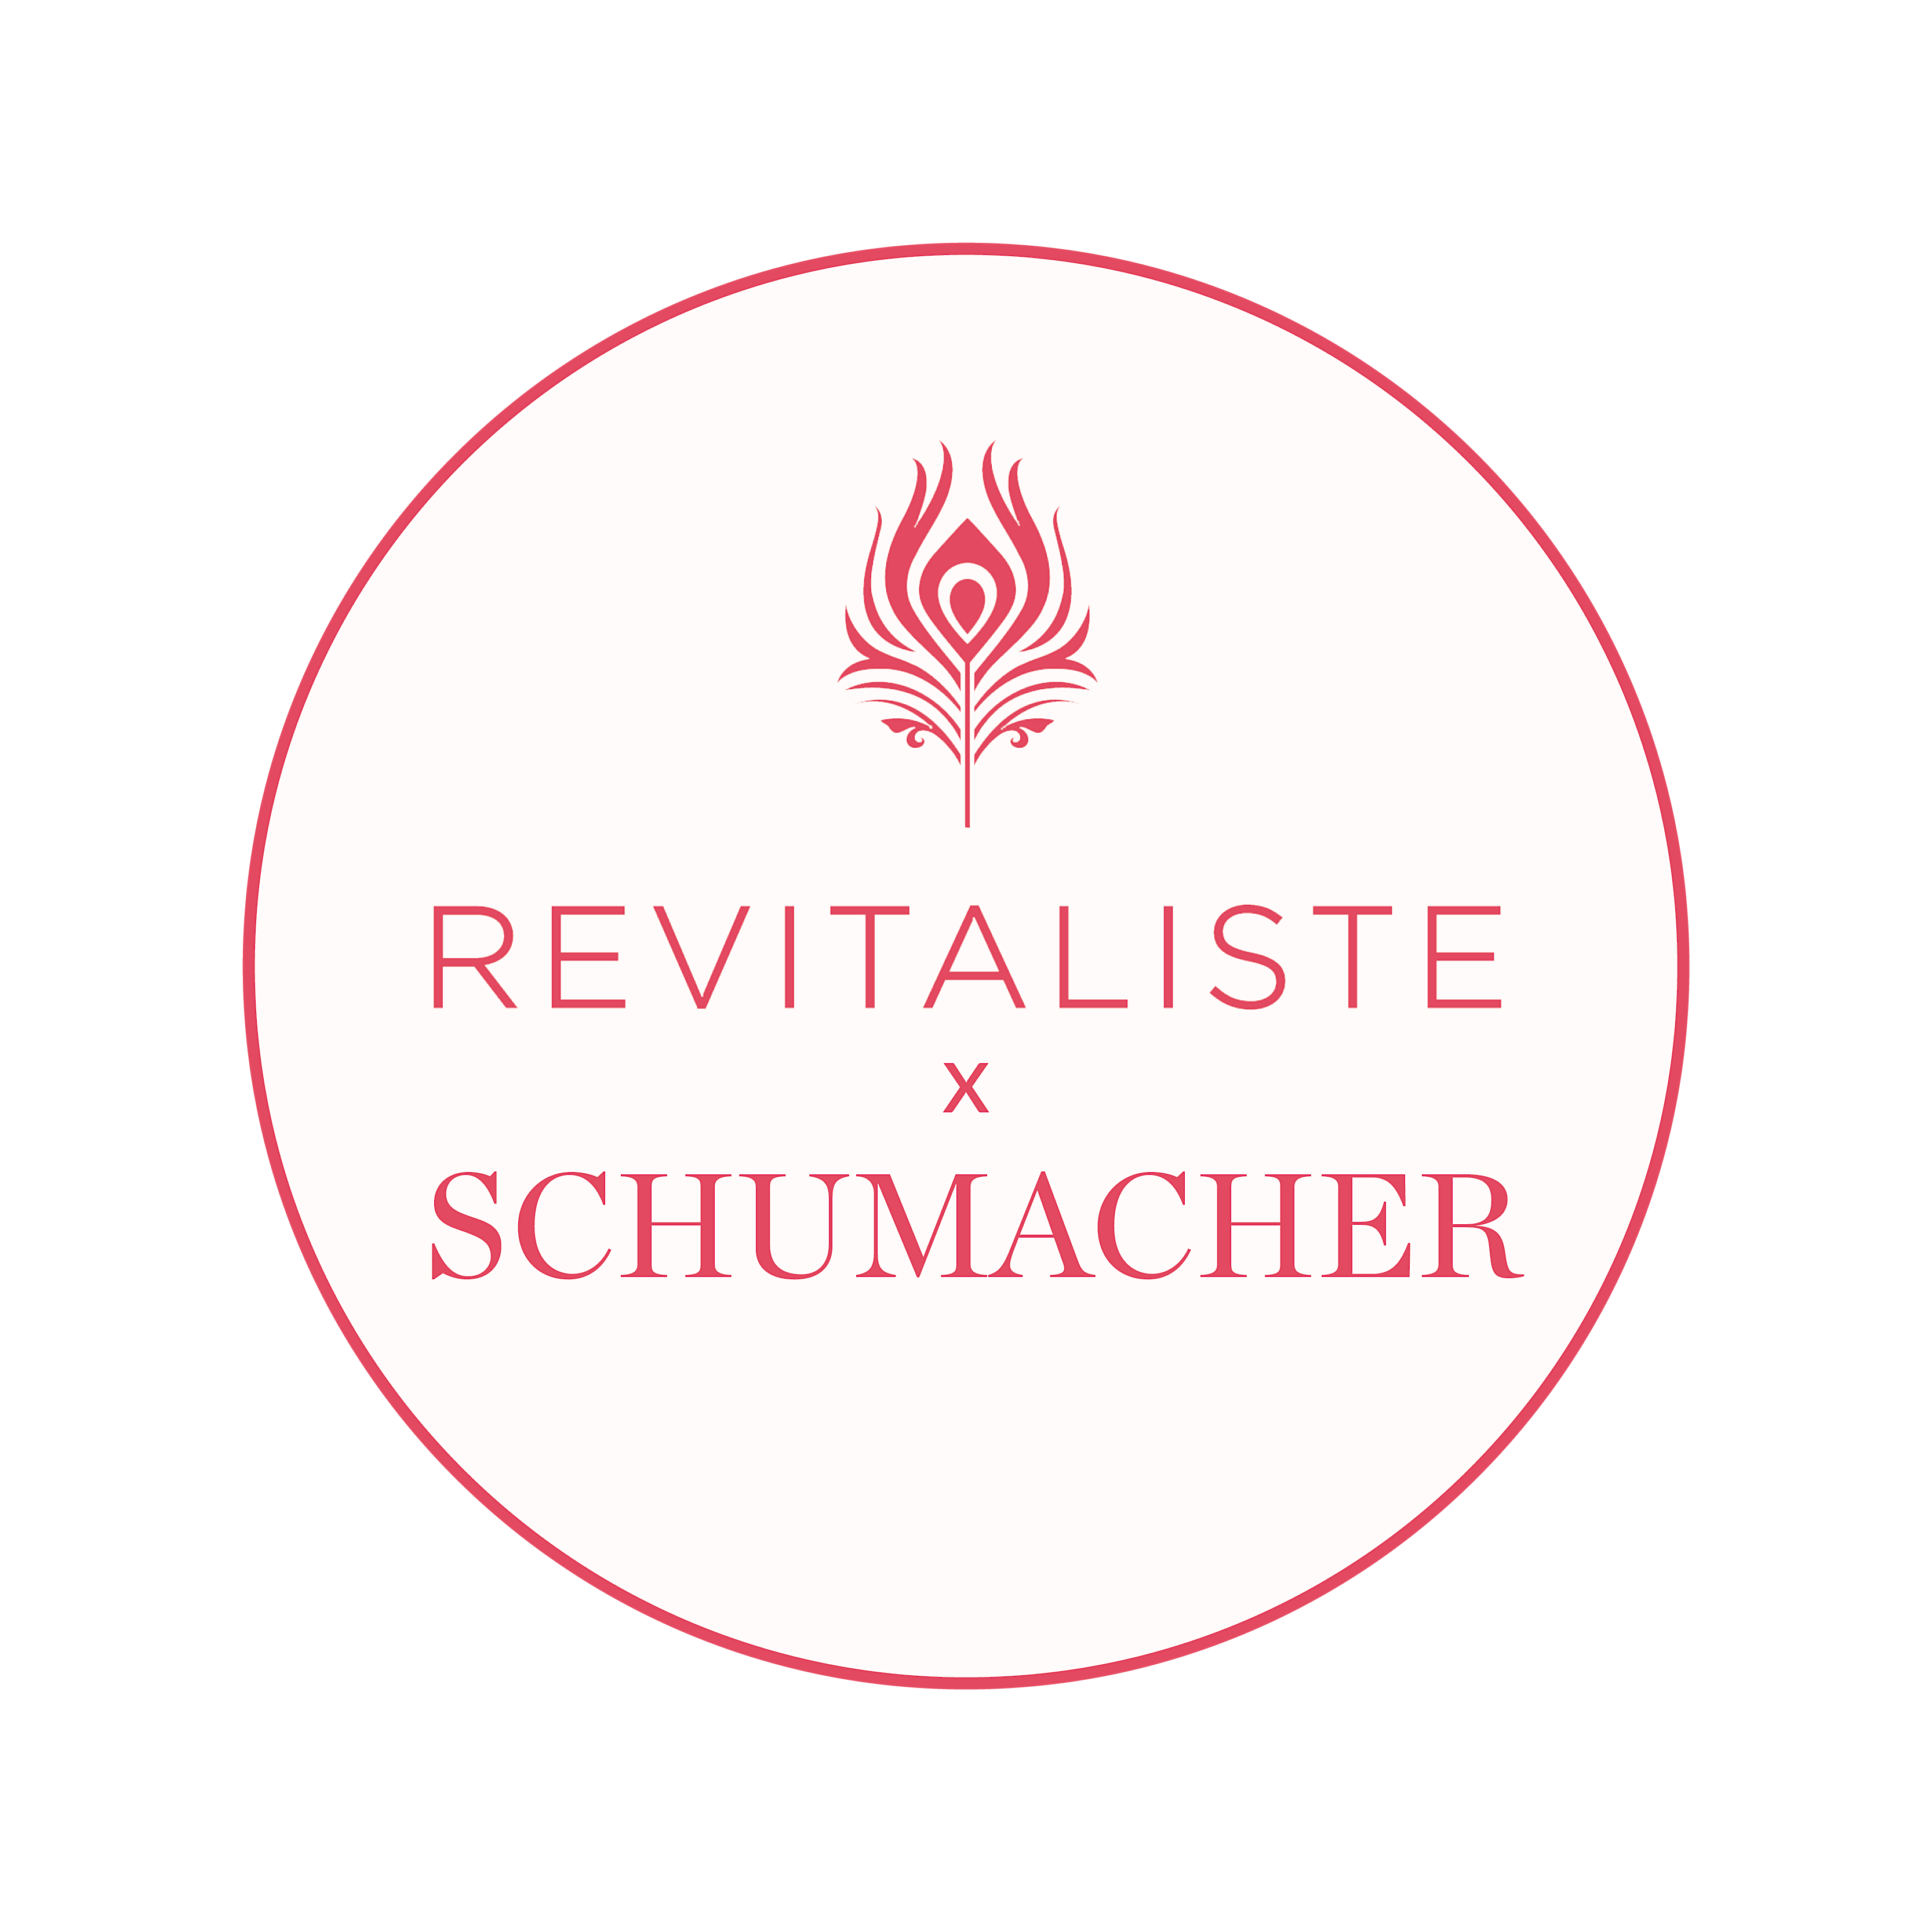 Revitaliste x Schumacher